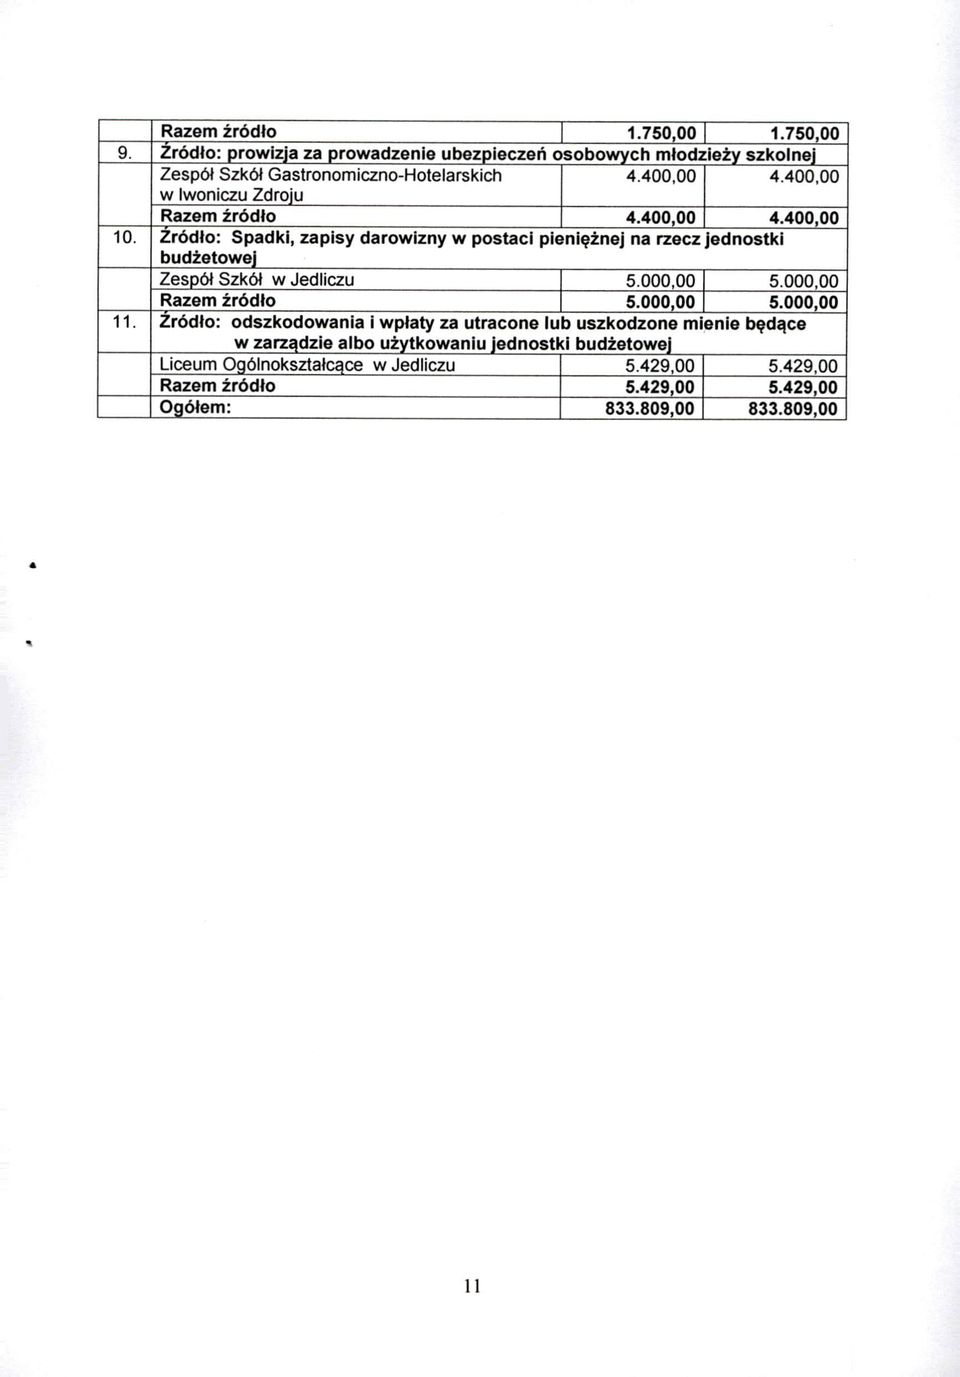 Zródło : Spadki, zapisy darowizny w postaci pieniężnej na rzecz jednostki budżetowej Zespół Szkół w Jedliczu I 5.000,00 I 5.000,00 Razem źródło I 5.ooo oo I 5.